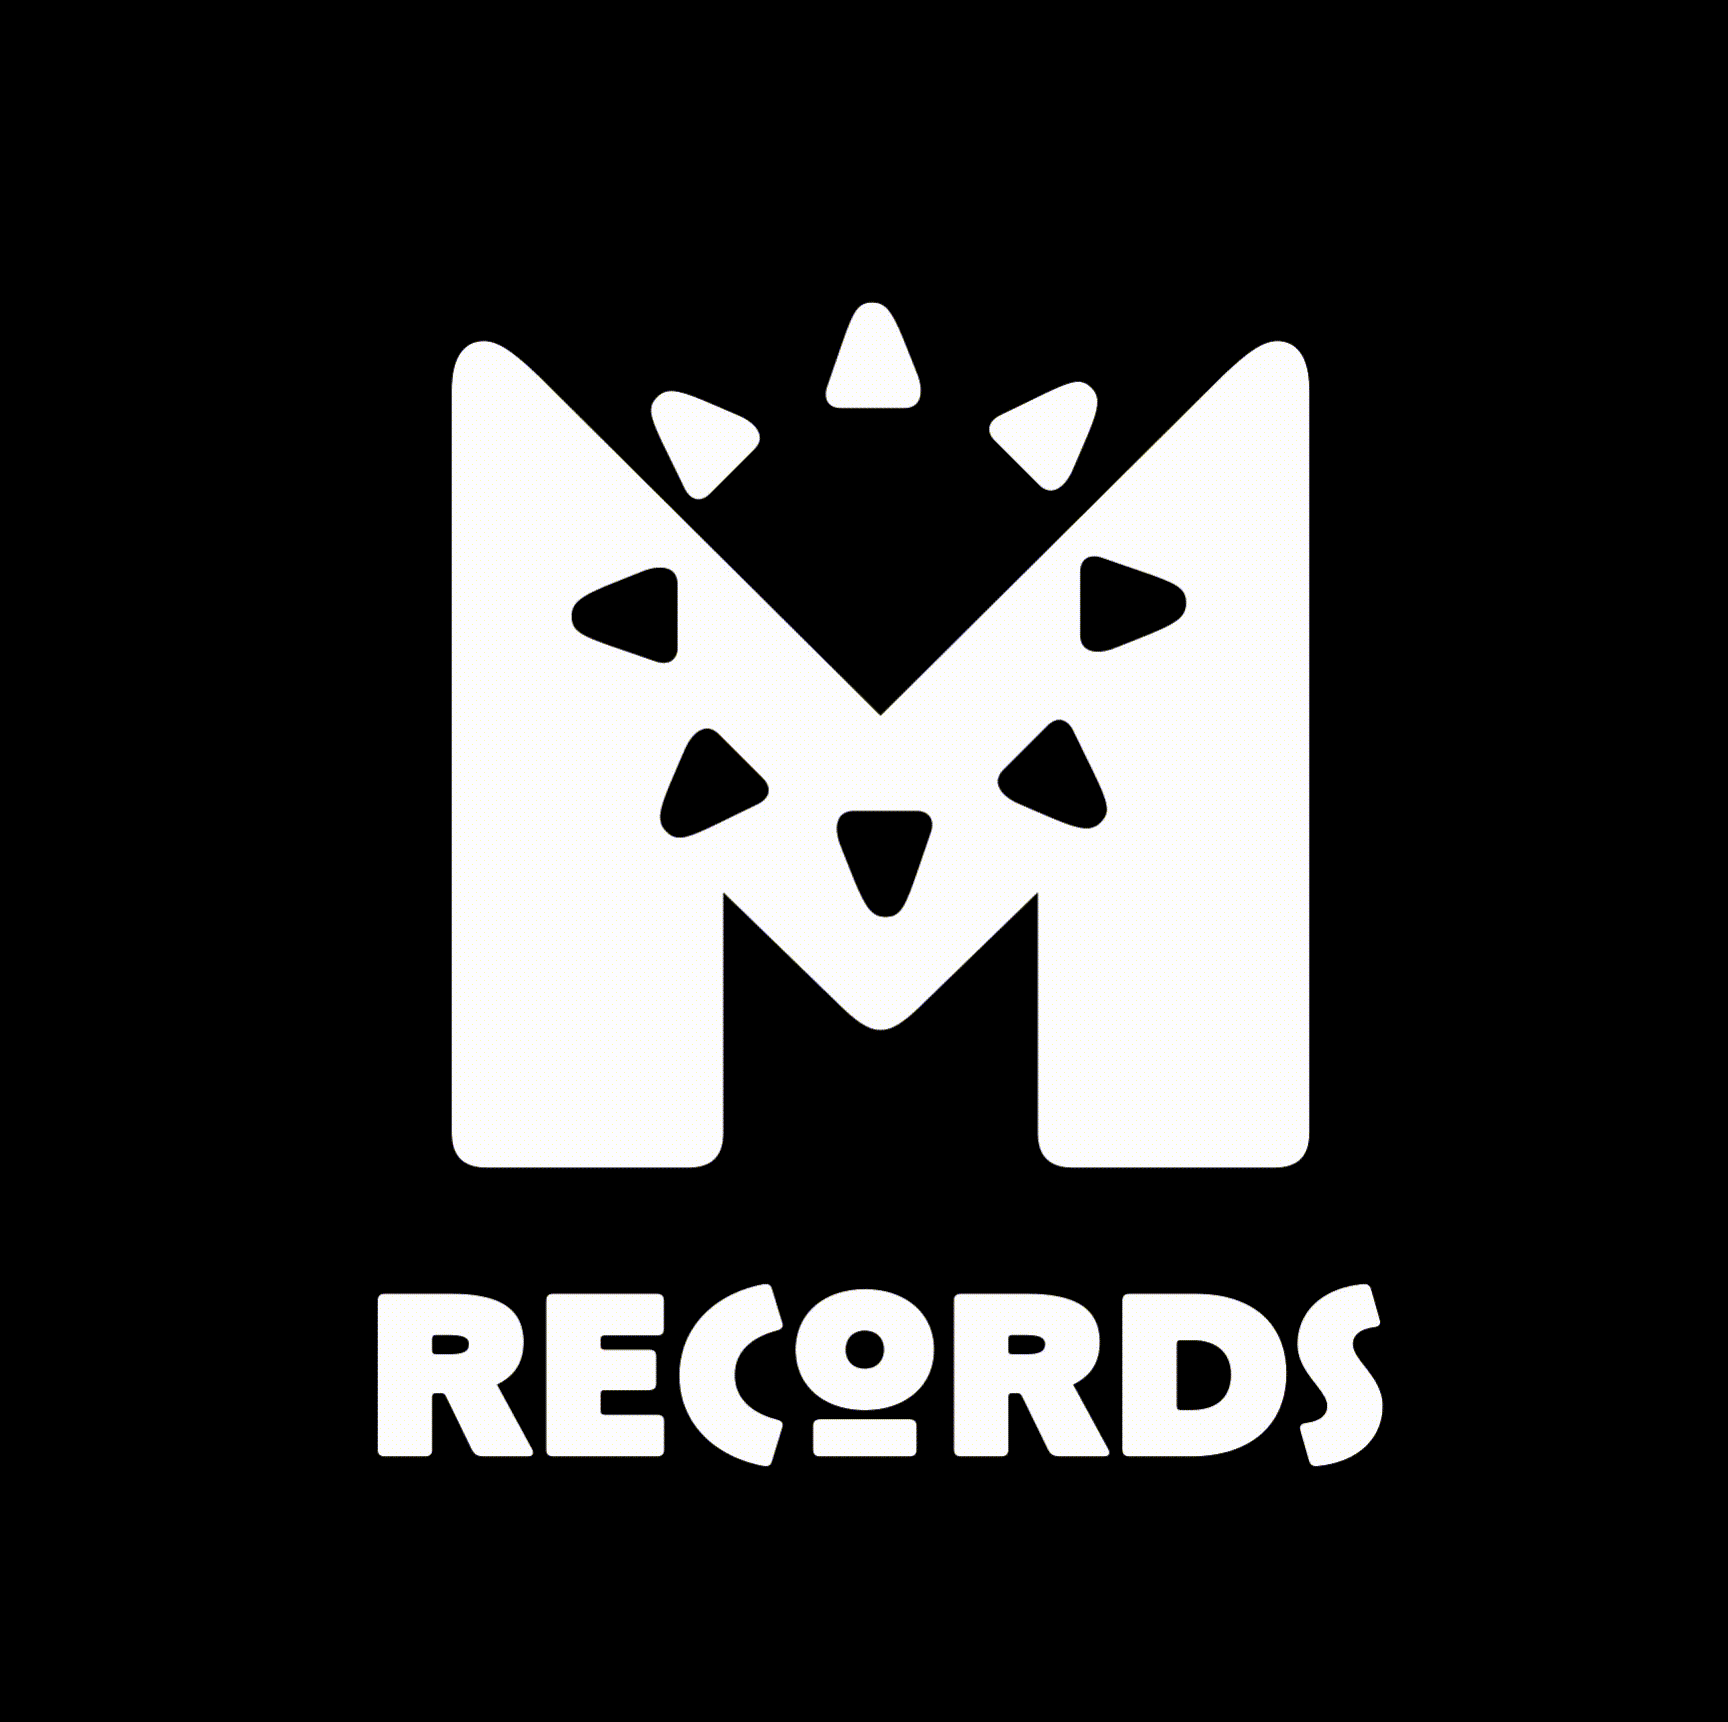 Movimientos Records